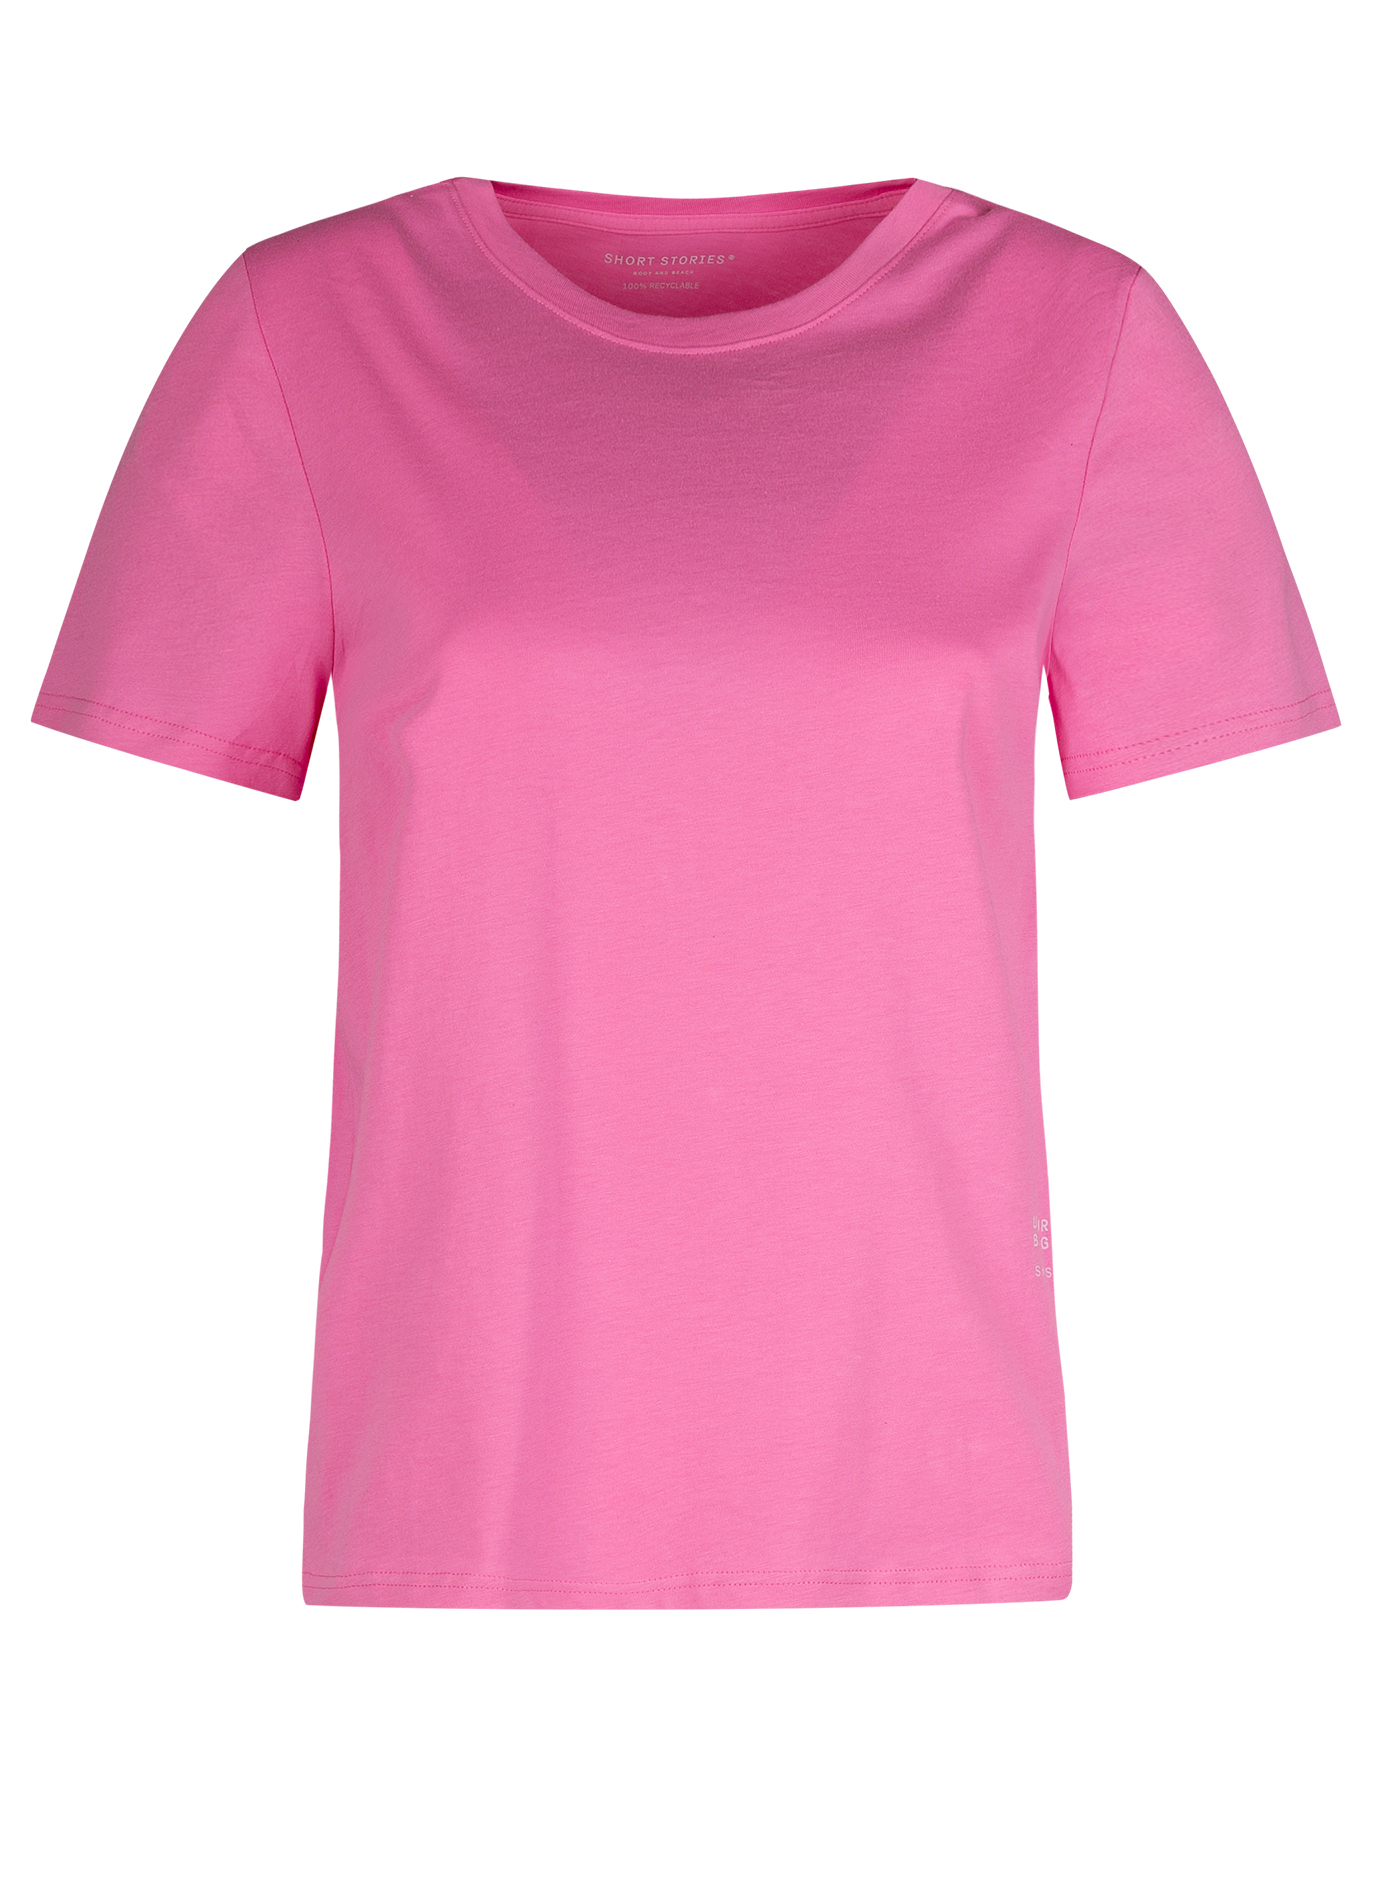 Damen T-Shirt Rosa